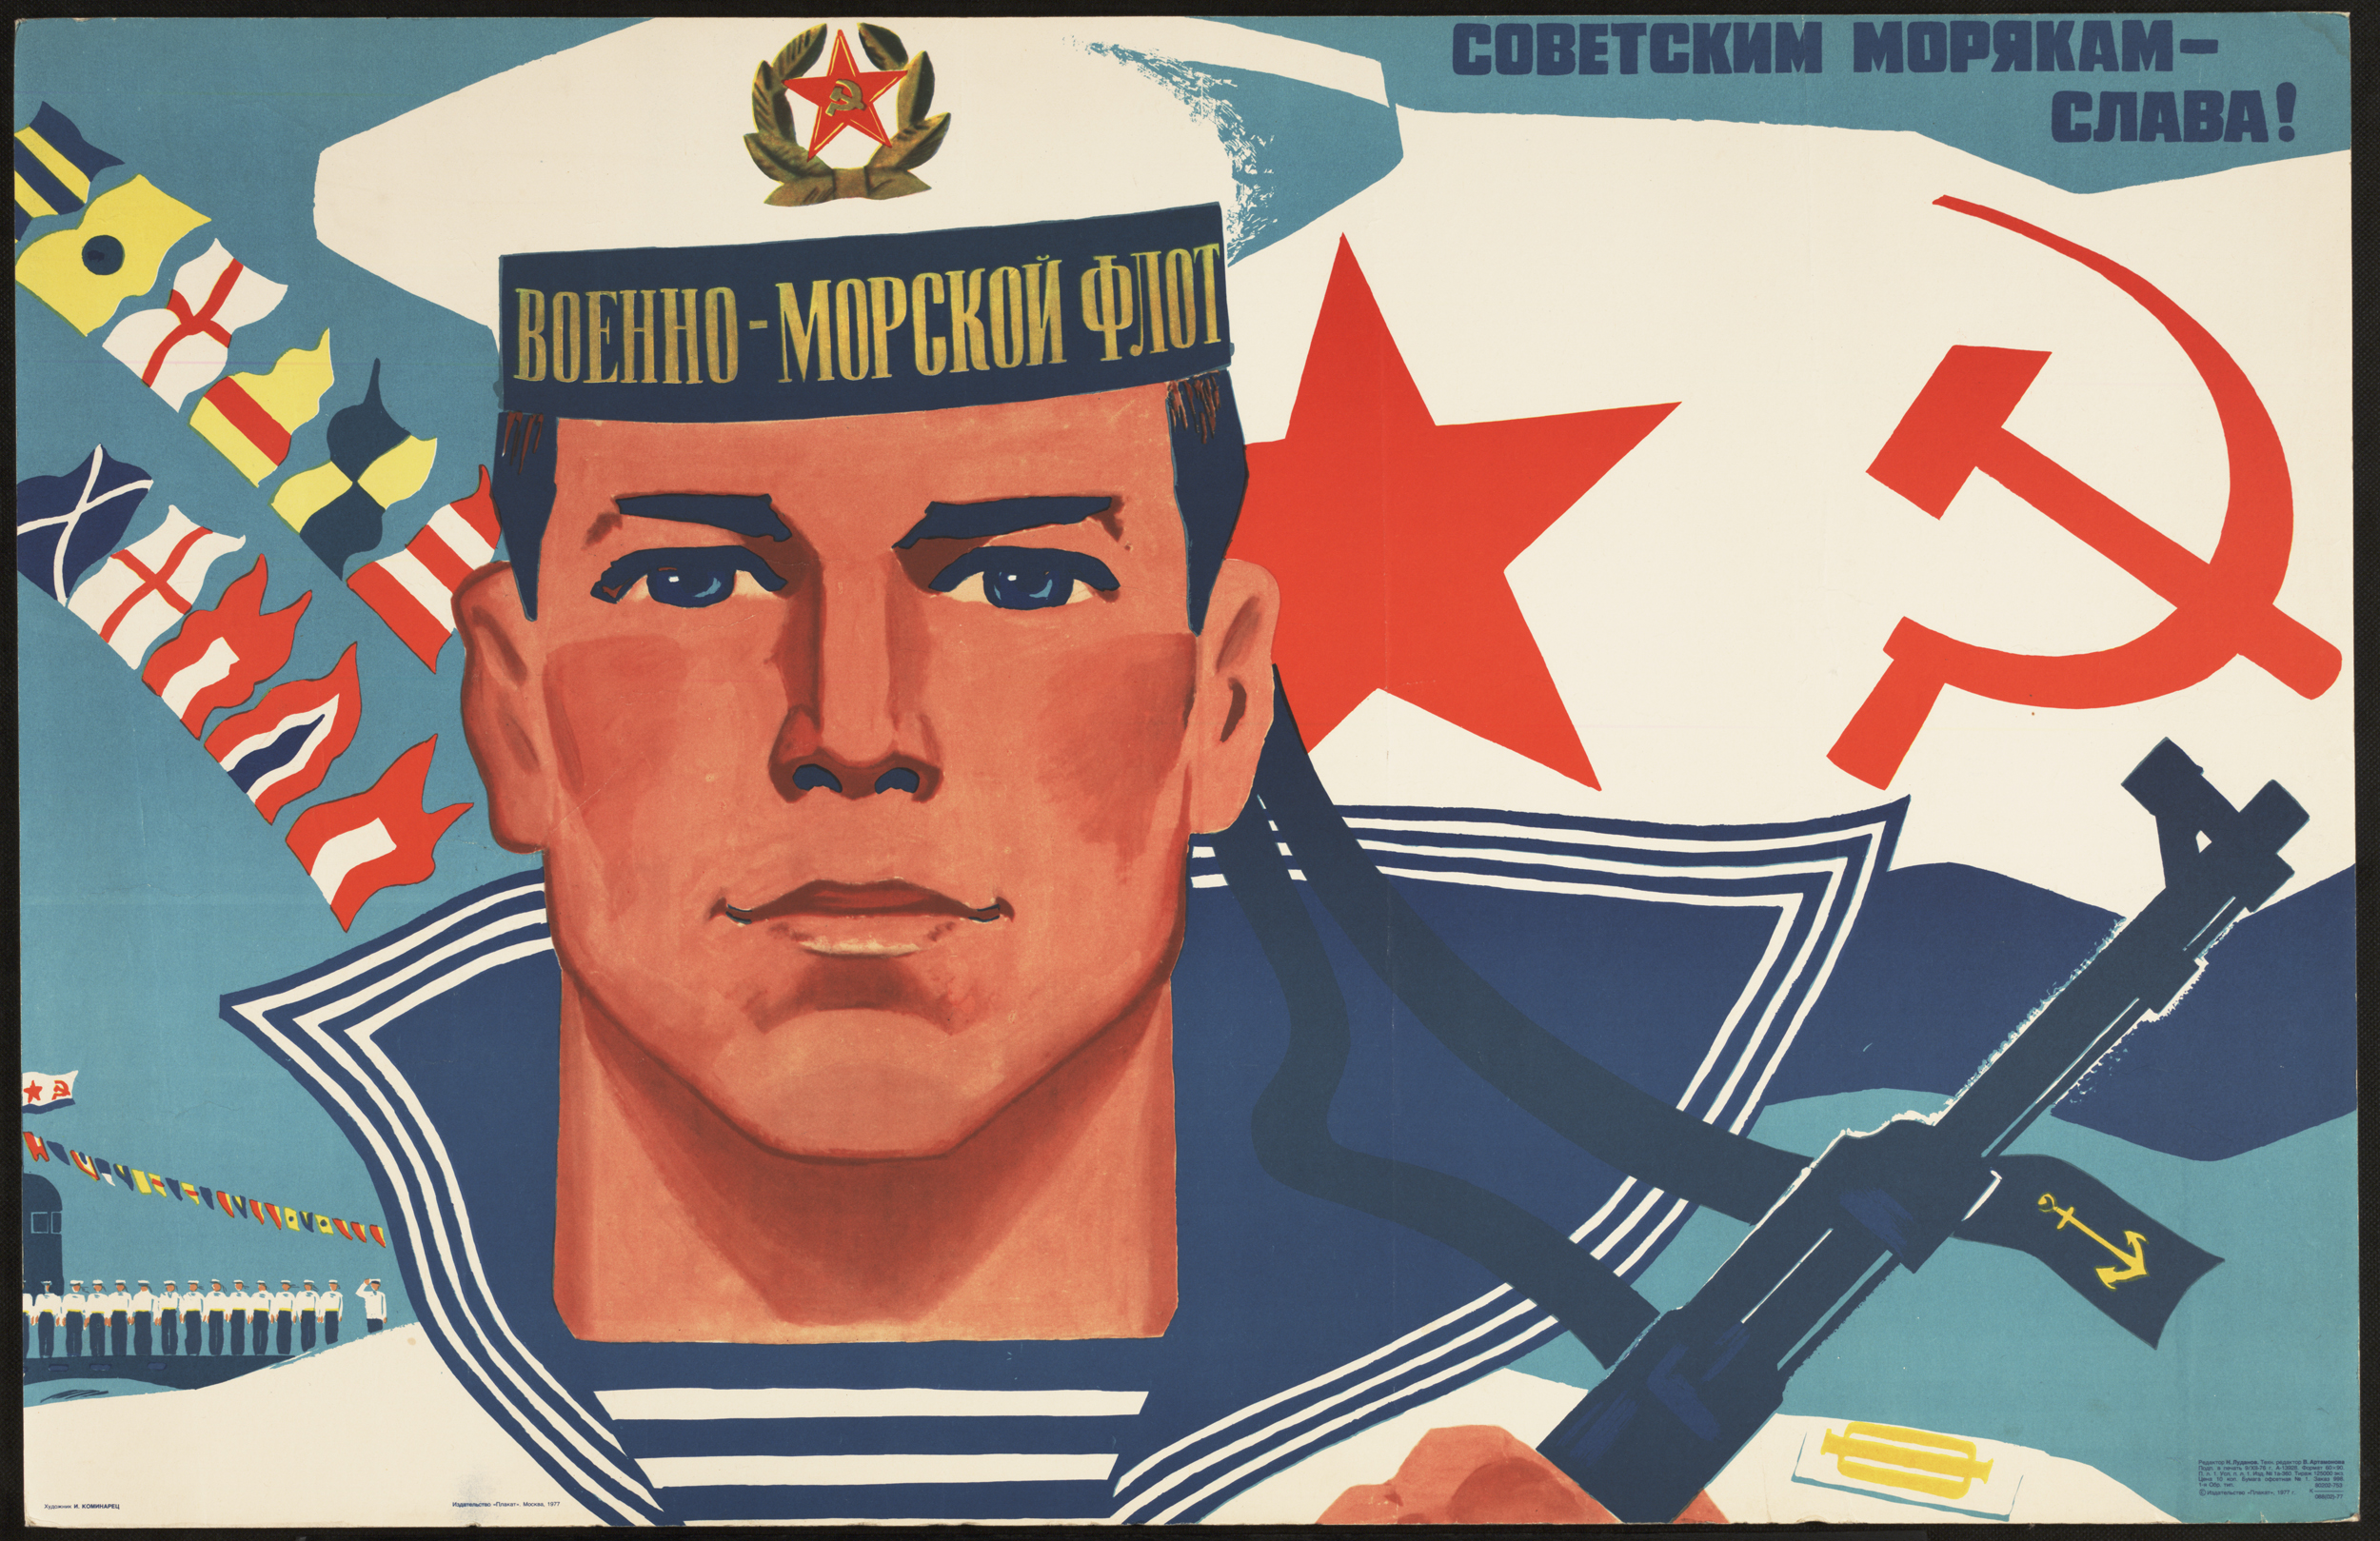 A Cold-War era poster.